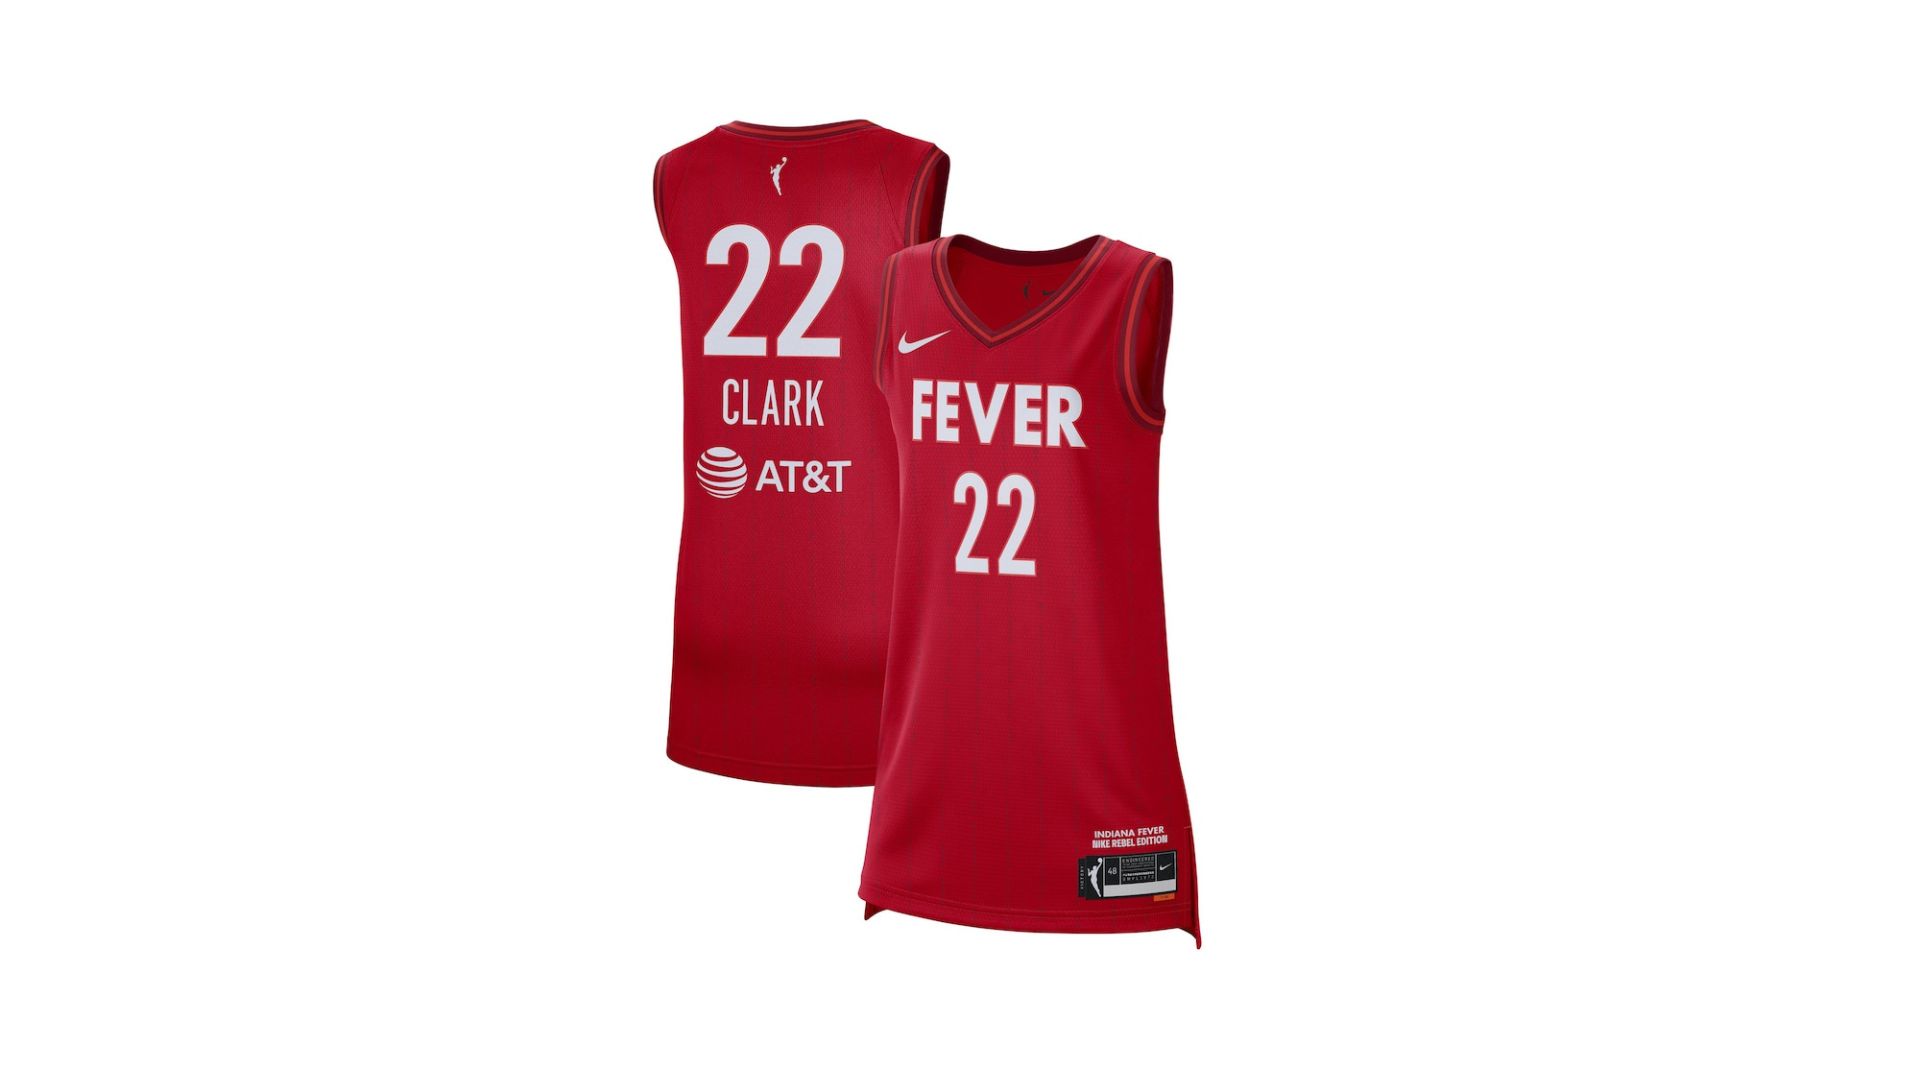 Comprar camiseta Caitlin Clark WNBA Indiana Fever: precios, disponibilidad